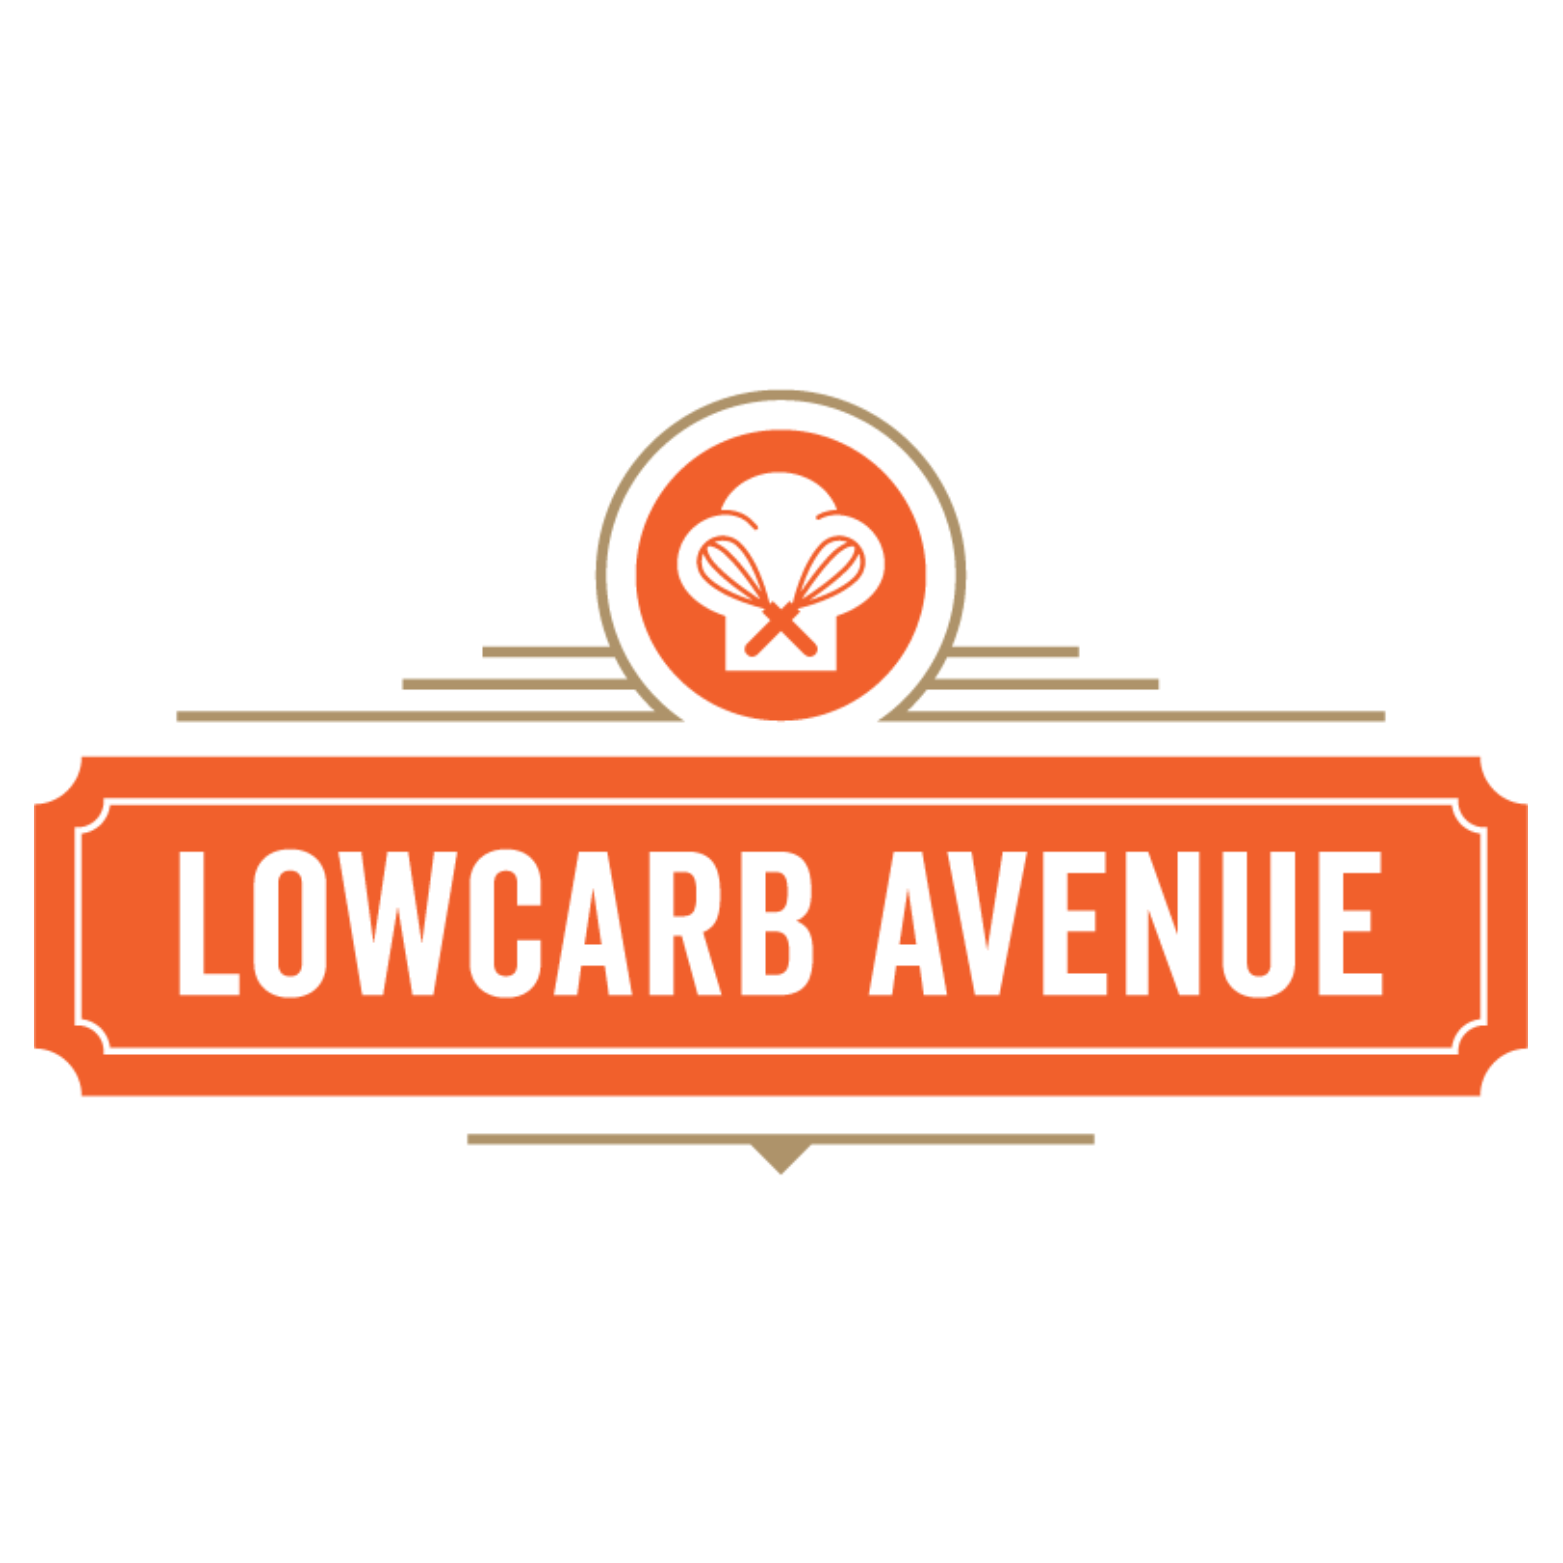 Low Carb Avenue logo